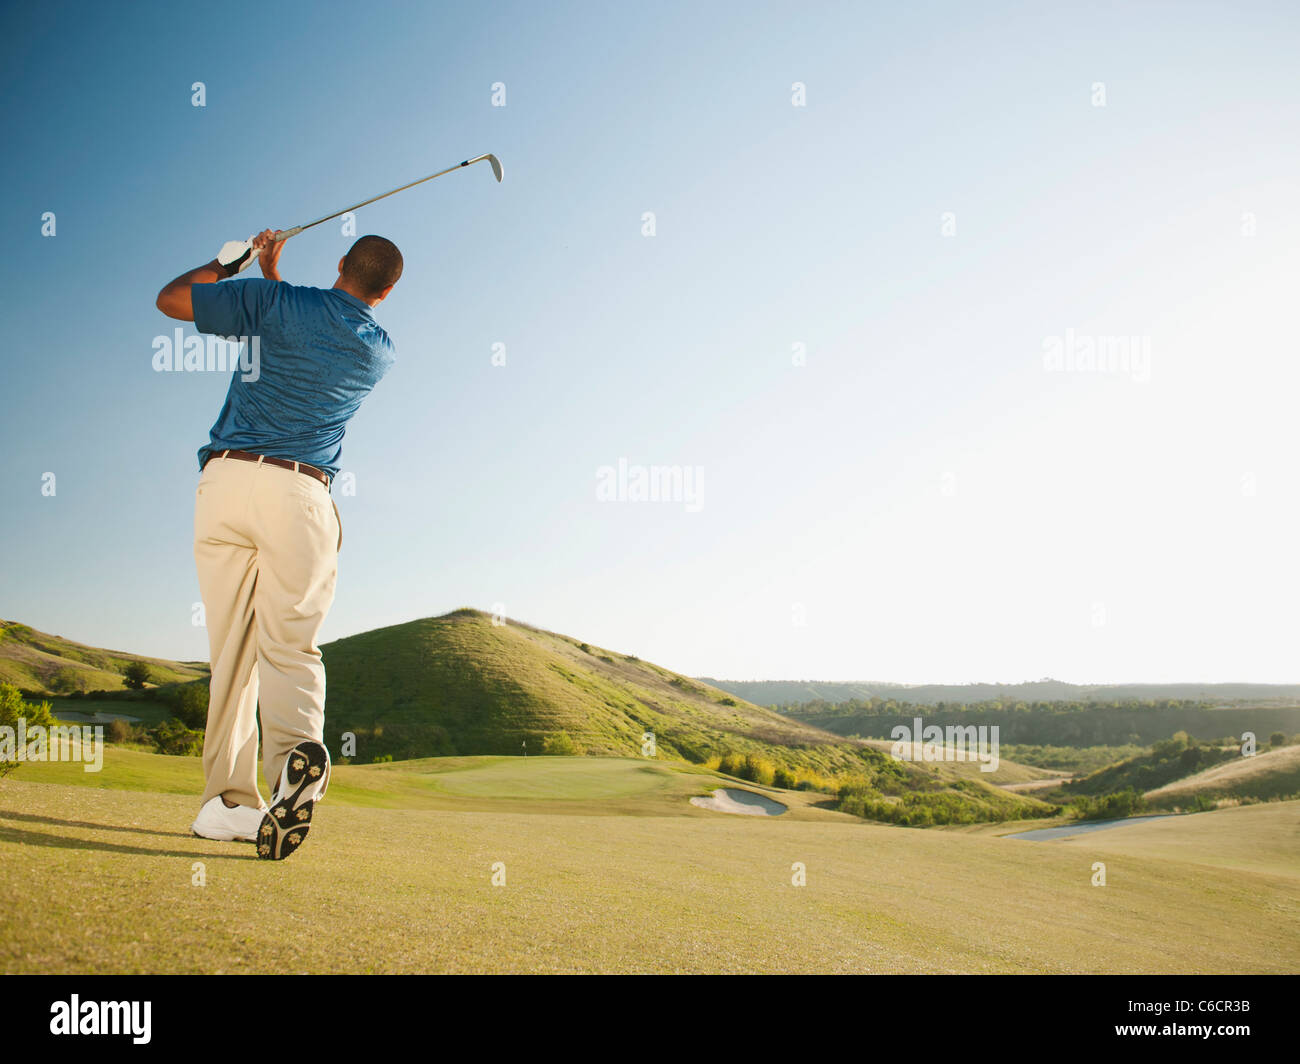 Club de golf golfeur balancer noir Banque D'Images